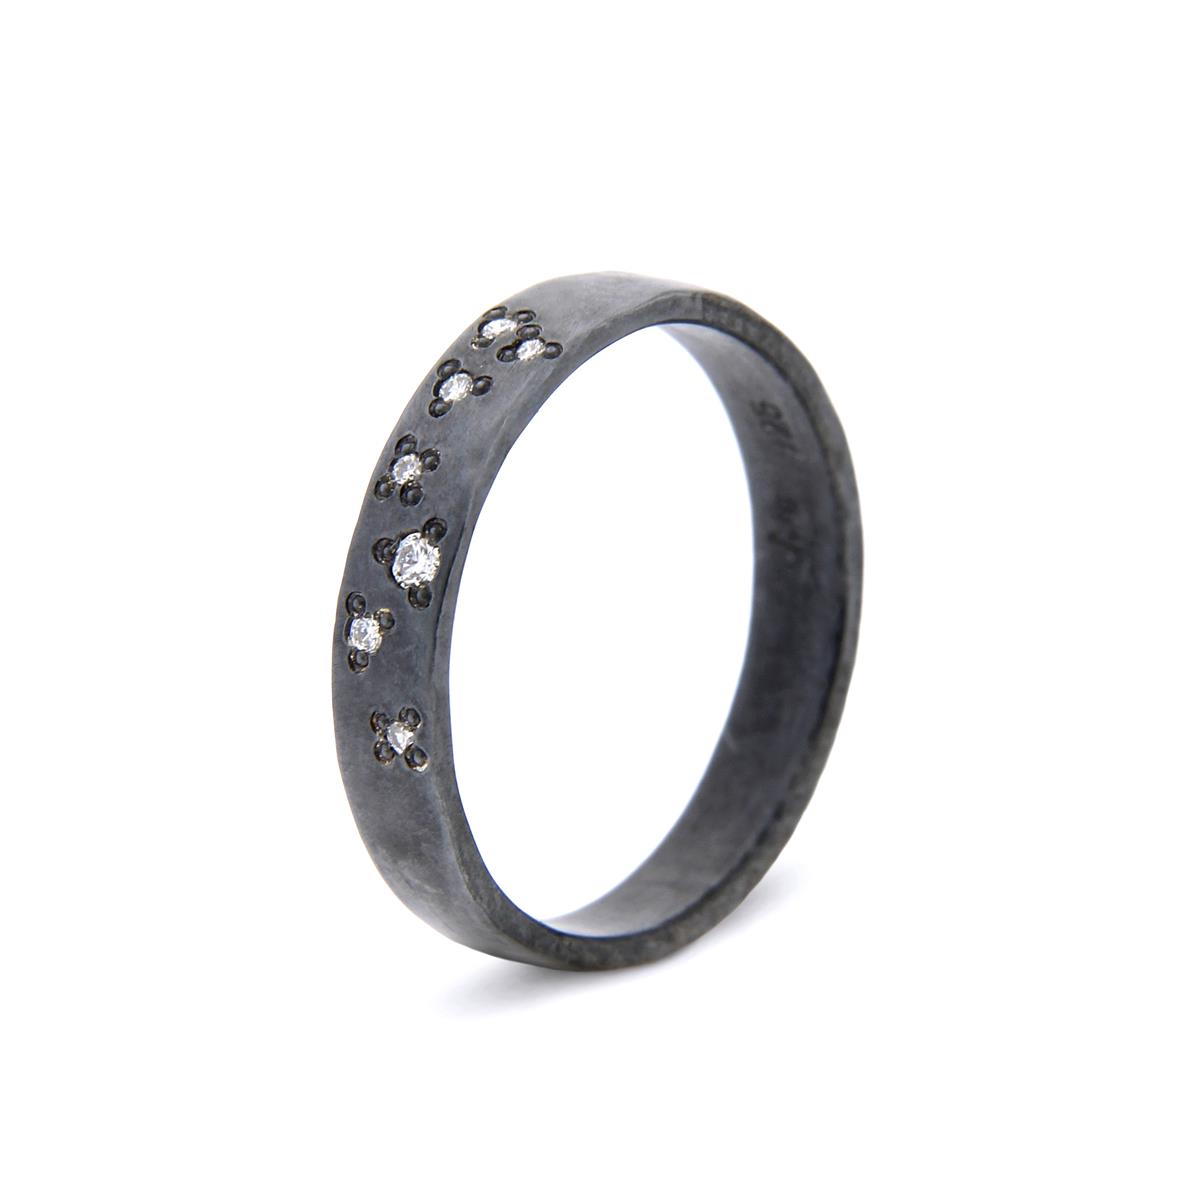 Katie g. Jewellery - Knuckle Ring Wide - sterling silber oxidiert mit stargazing brillanten - Ring um 60€ und pro Brillant 70€ - Brillant Anzahl und Position kann vom Kunden bestimmt werden